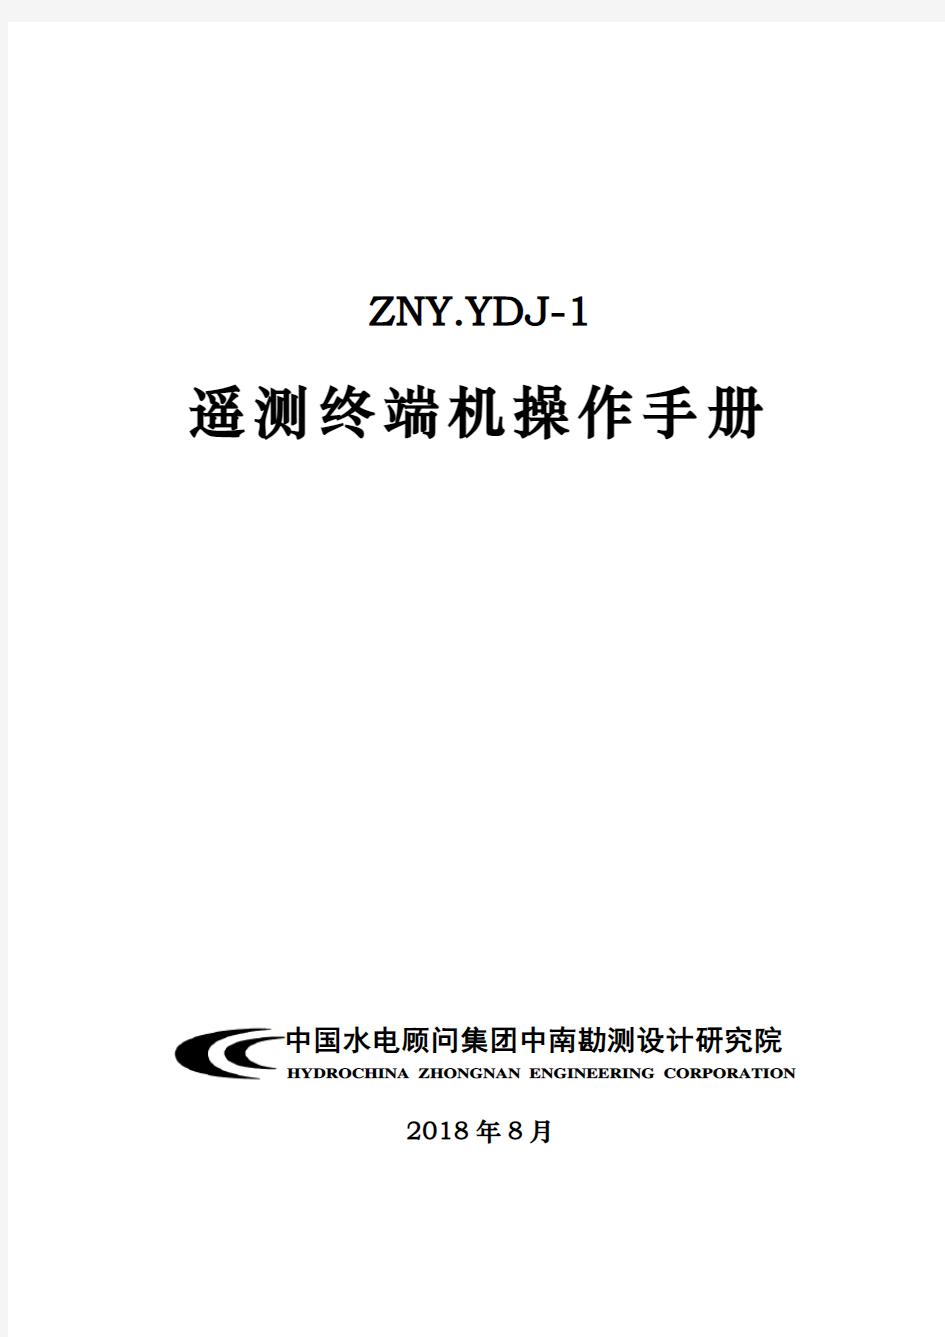 ZNY.YDJ-1遥测终端使用手册